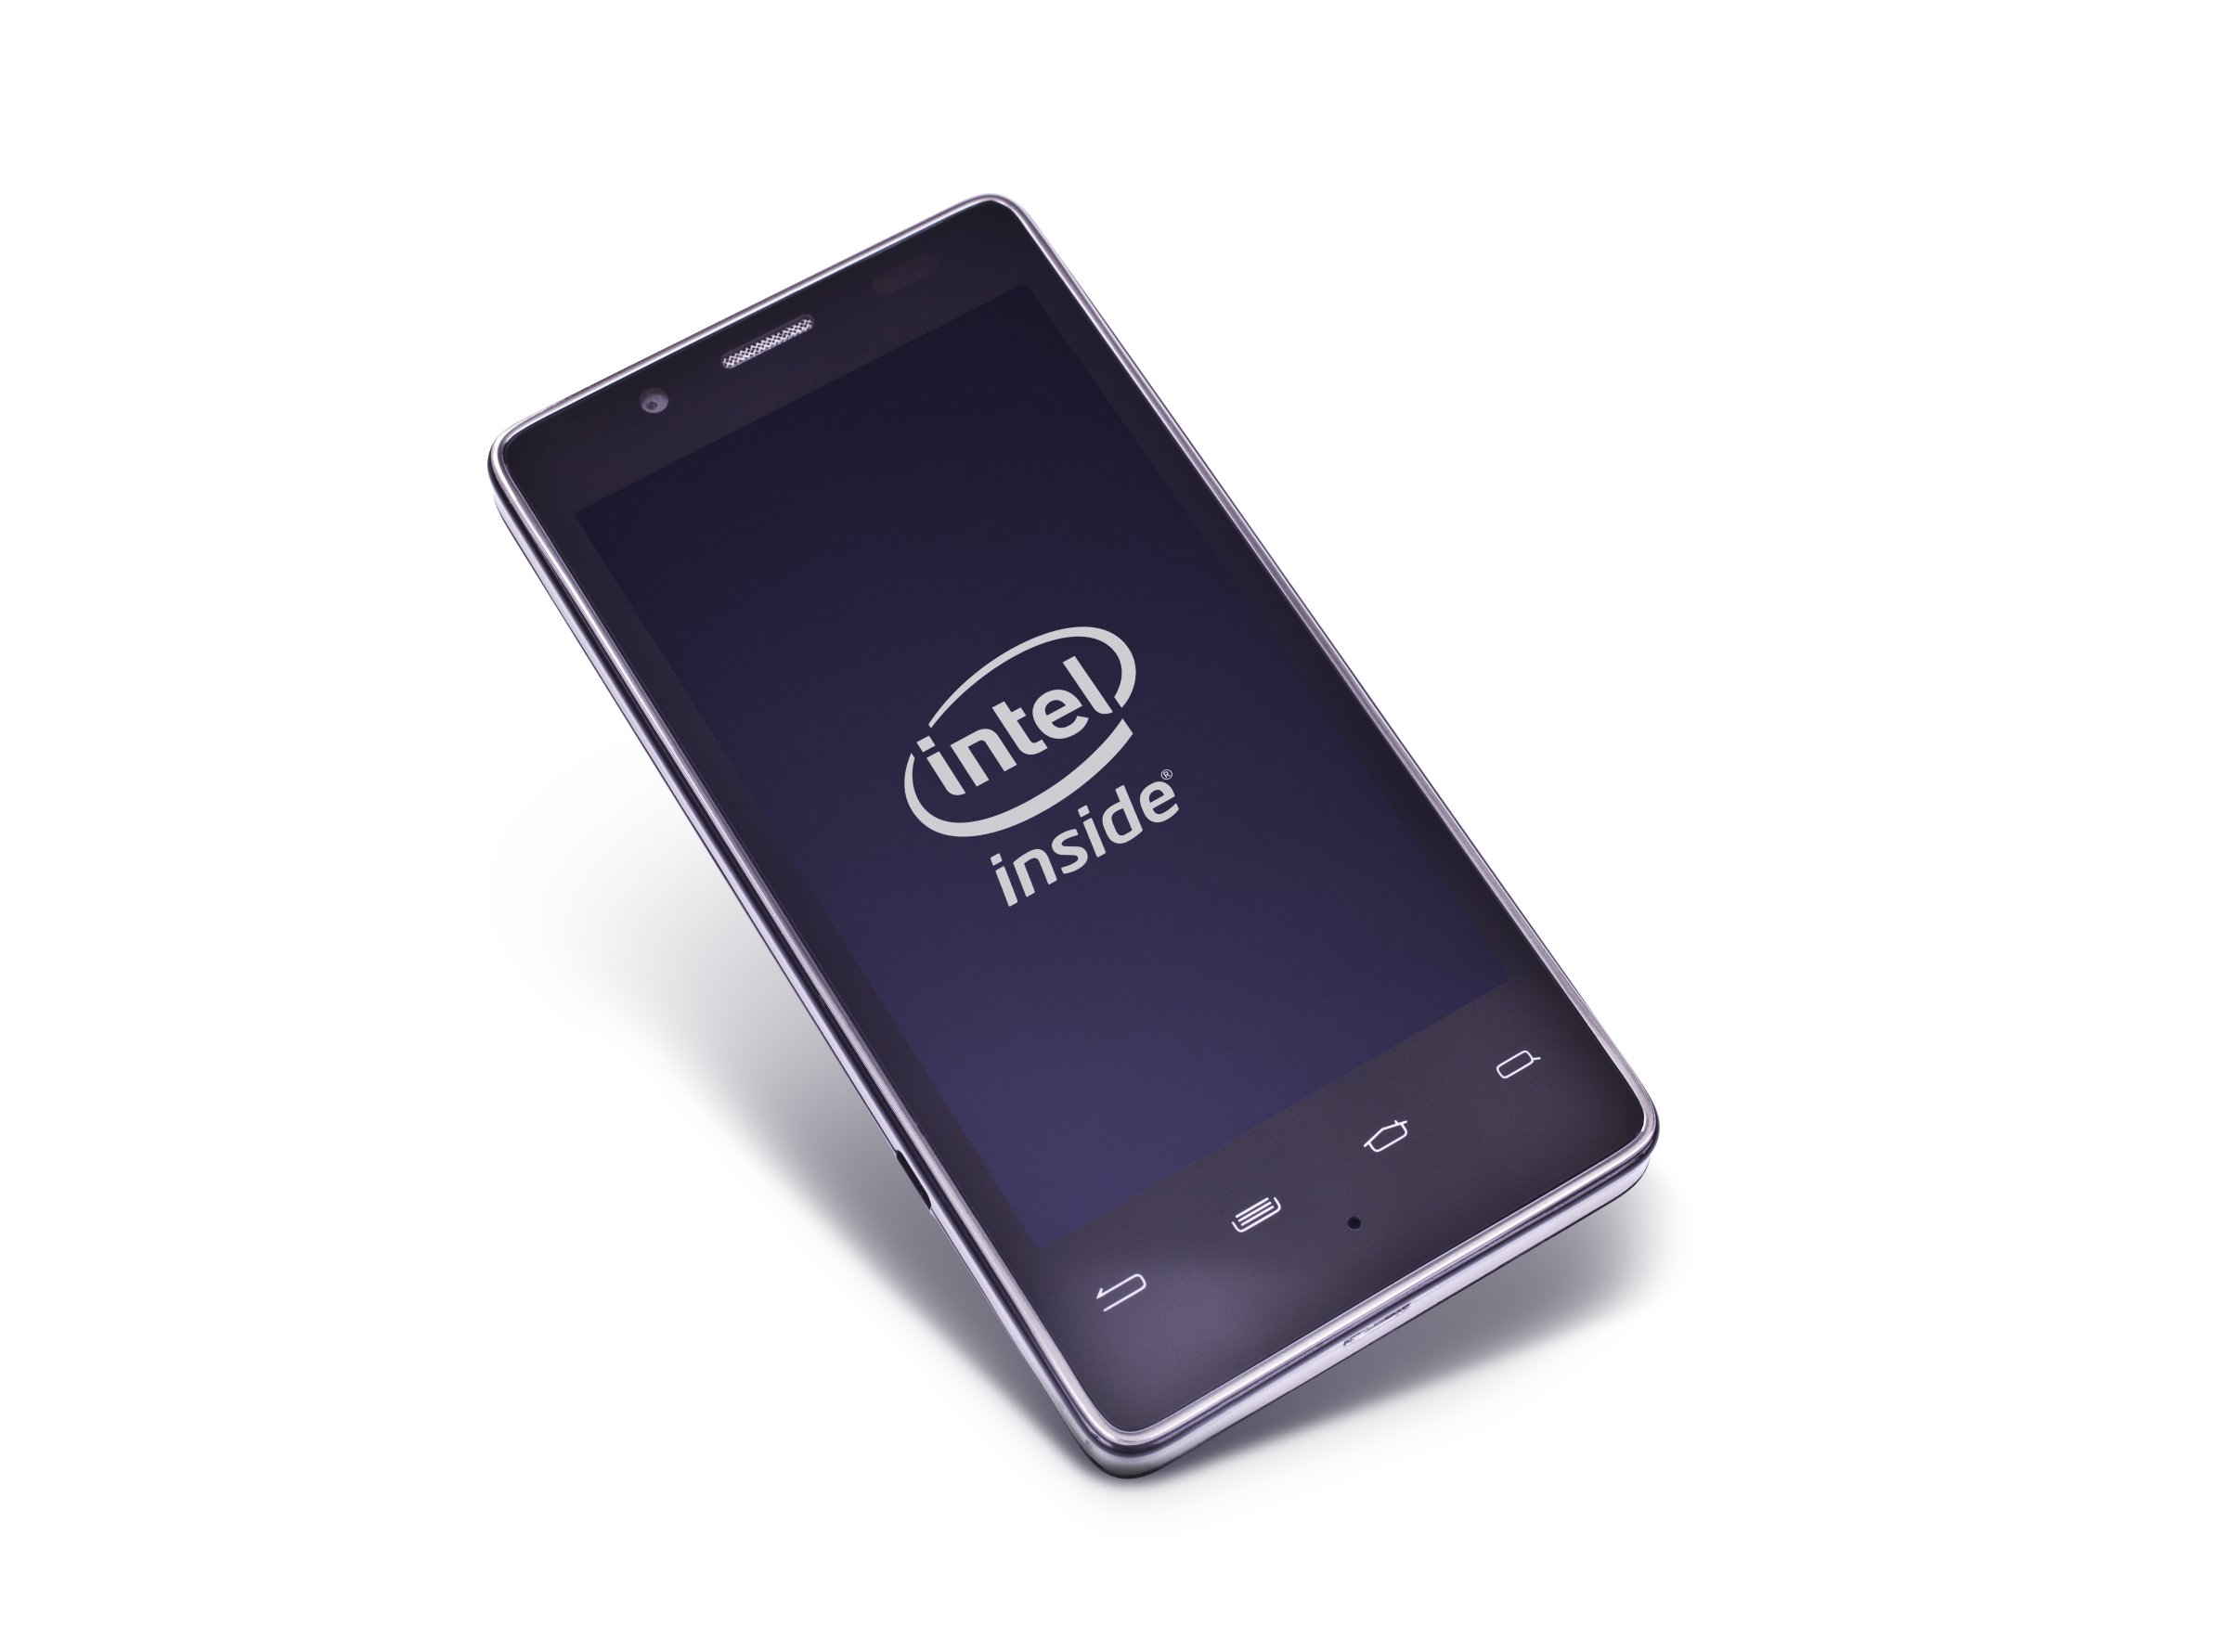 Immagine pubblicata in relazione al seguente contenuto: Cosa farebbe Intel per commercializzare 60 milioni di chip mobile nel 2014? | Nome immagine: news20560_smartphone-with-intel-inside_2.jpg